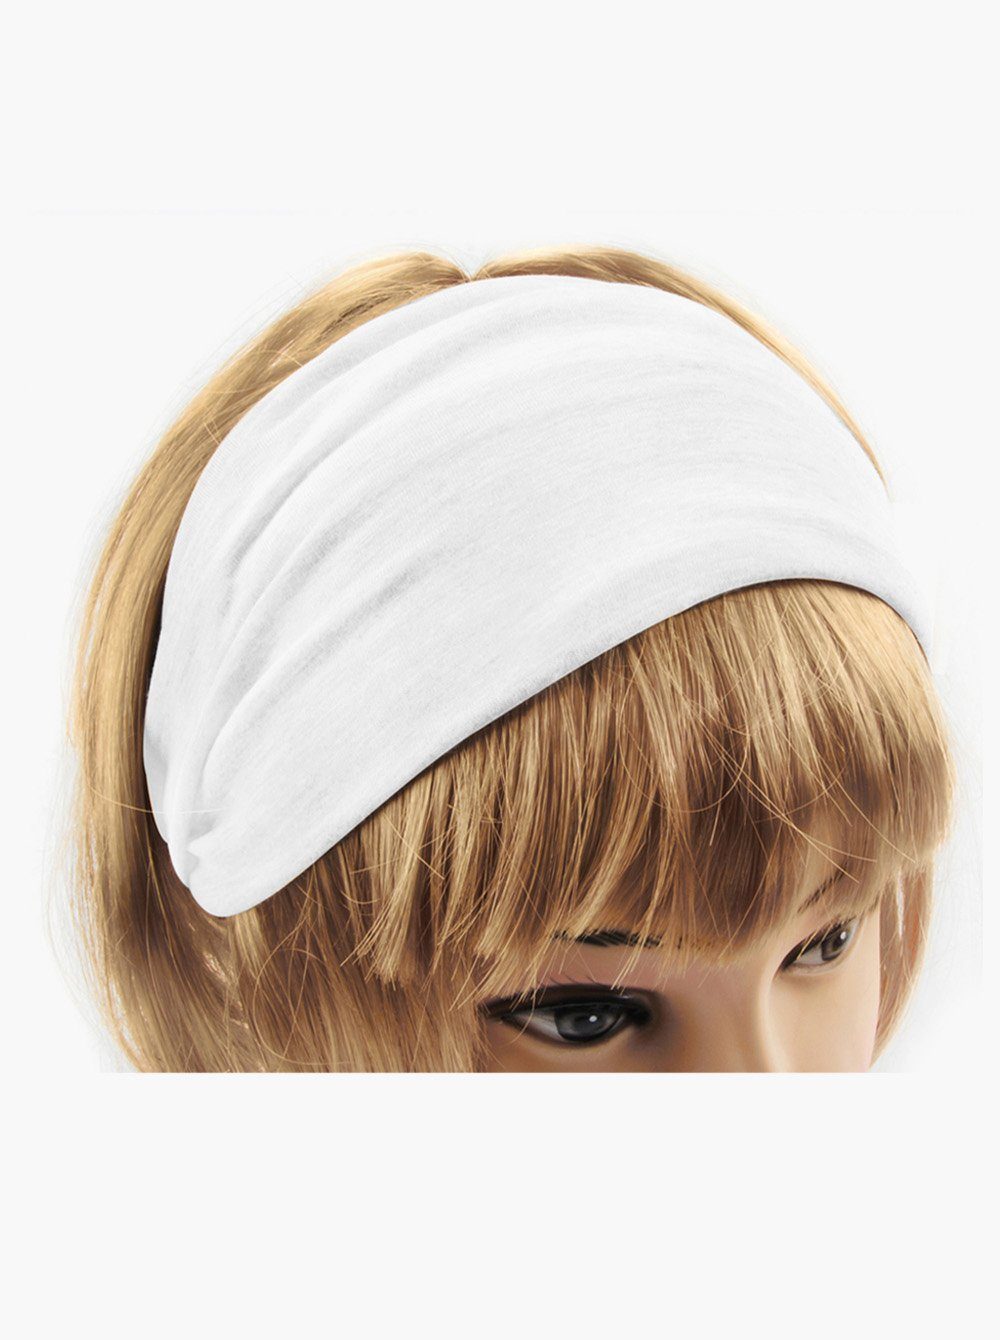 axy Haarband Damen Kopfband, Haarband Sport und Weiss Yoga Stirnband für Hairband